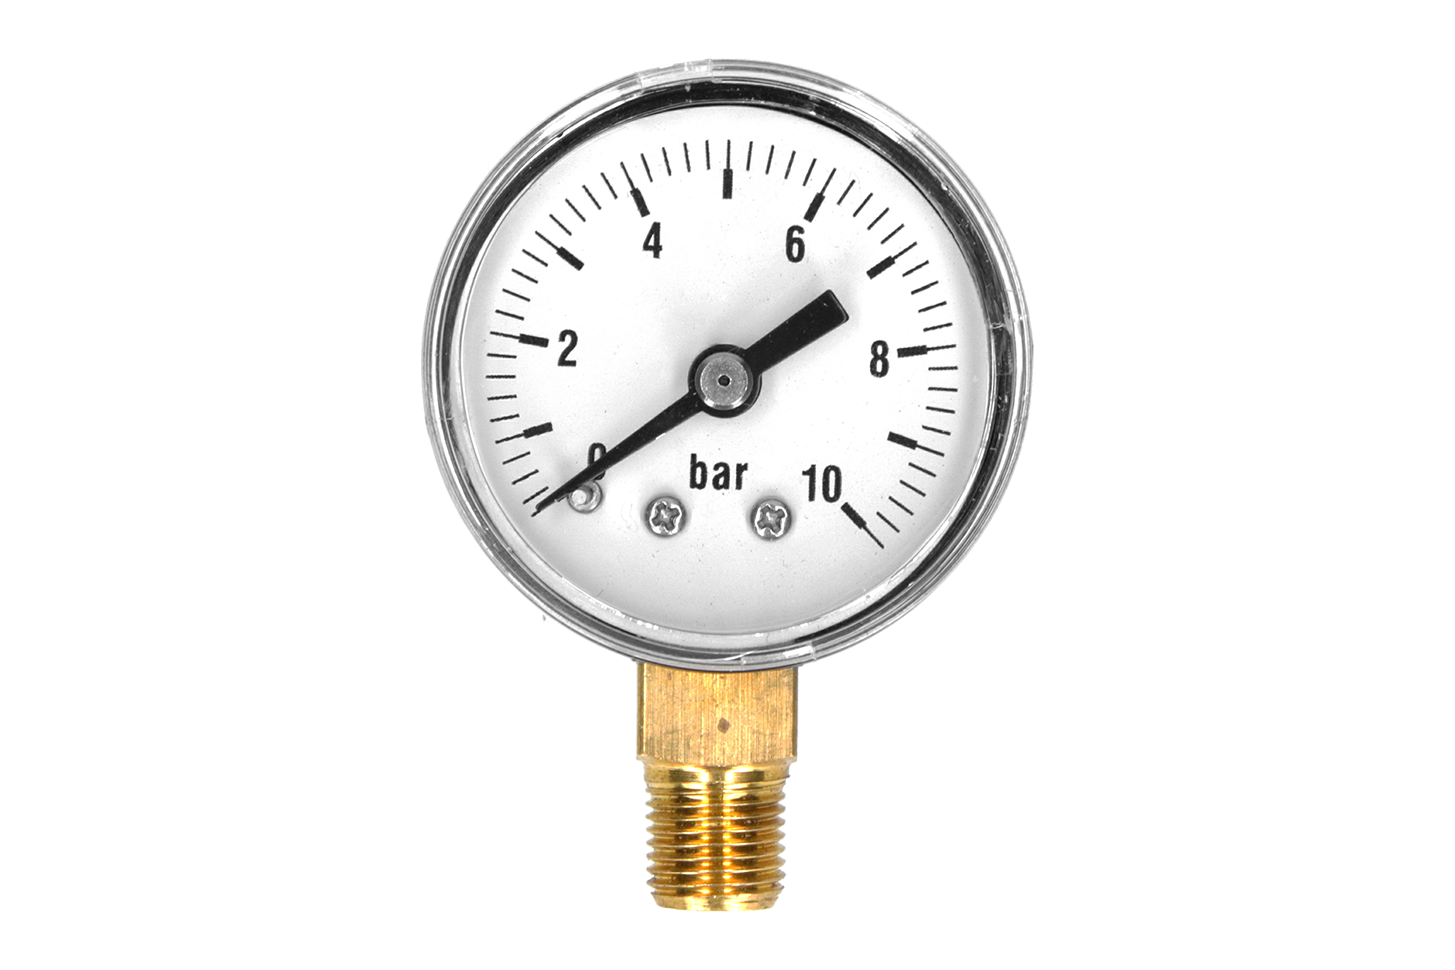 Pressure gauges dry application